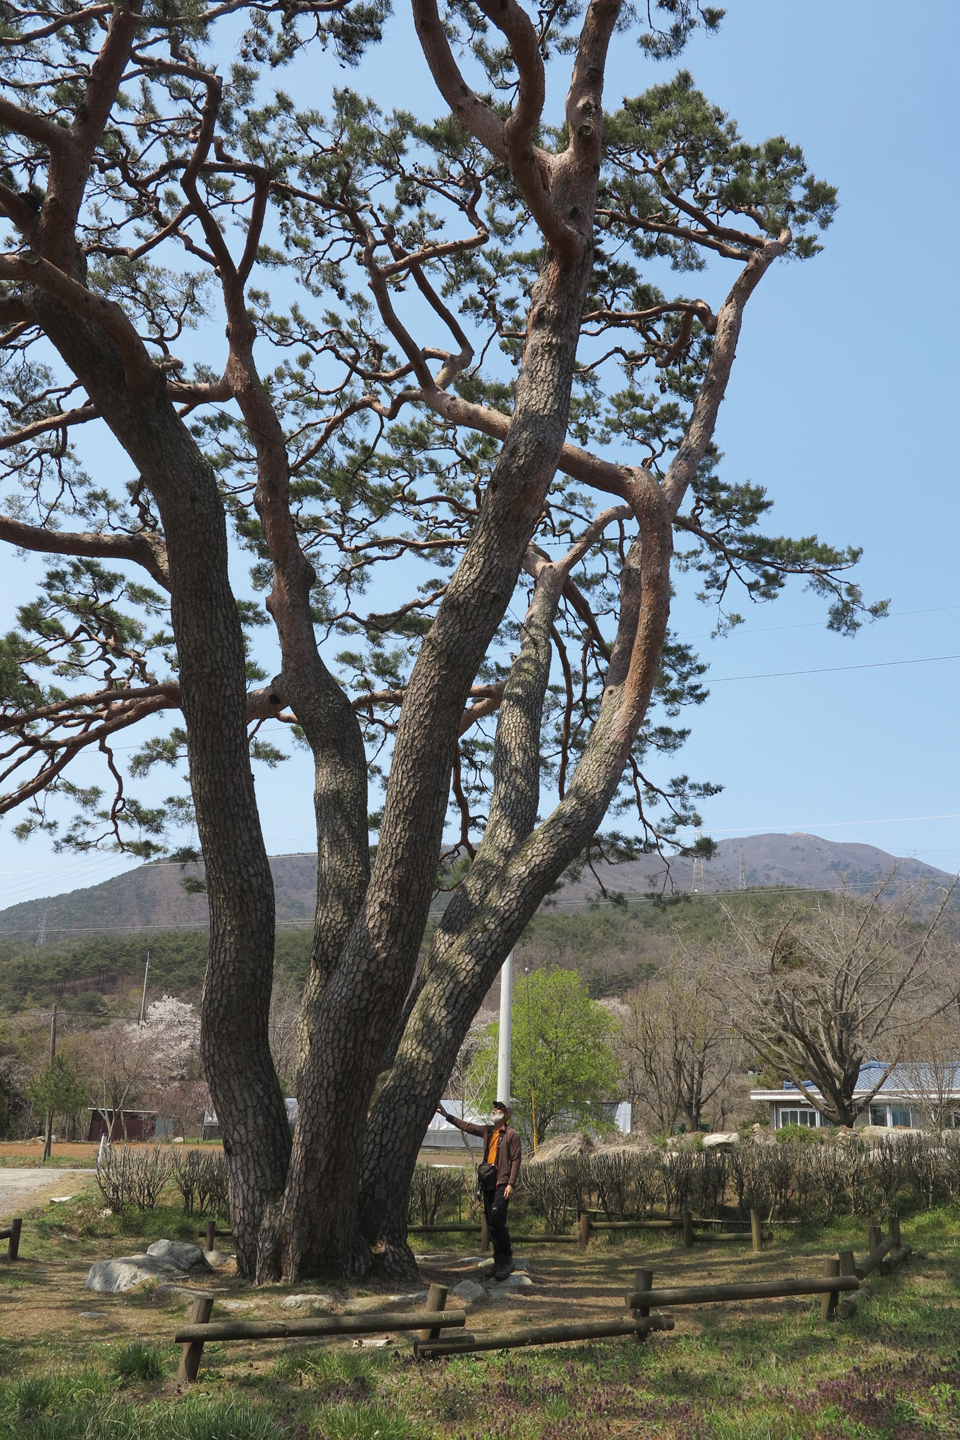 국립오서산자연휴양림 들머리인 장현 2리 시내버스 종점에 자리하고 있는 귀학송(충청남도 기념물 제 159호). 소나무 뒤 오른쪽으로 오서산 정상이 보인다.